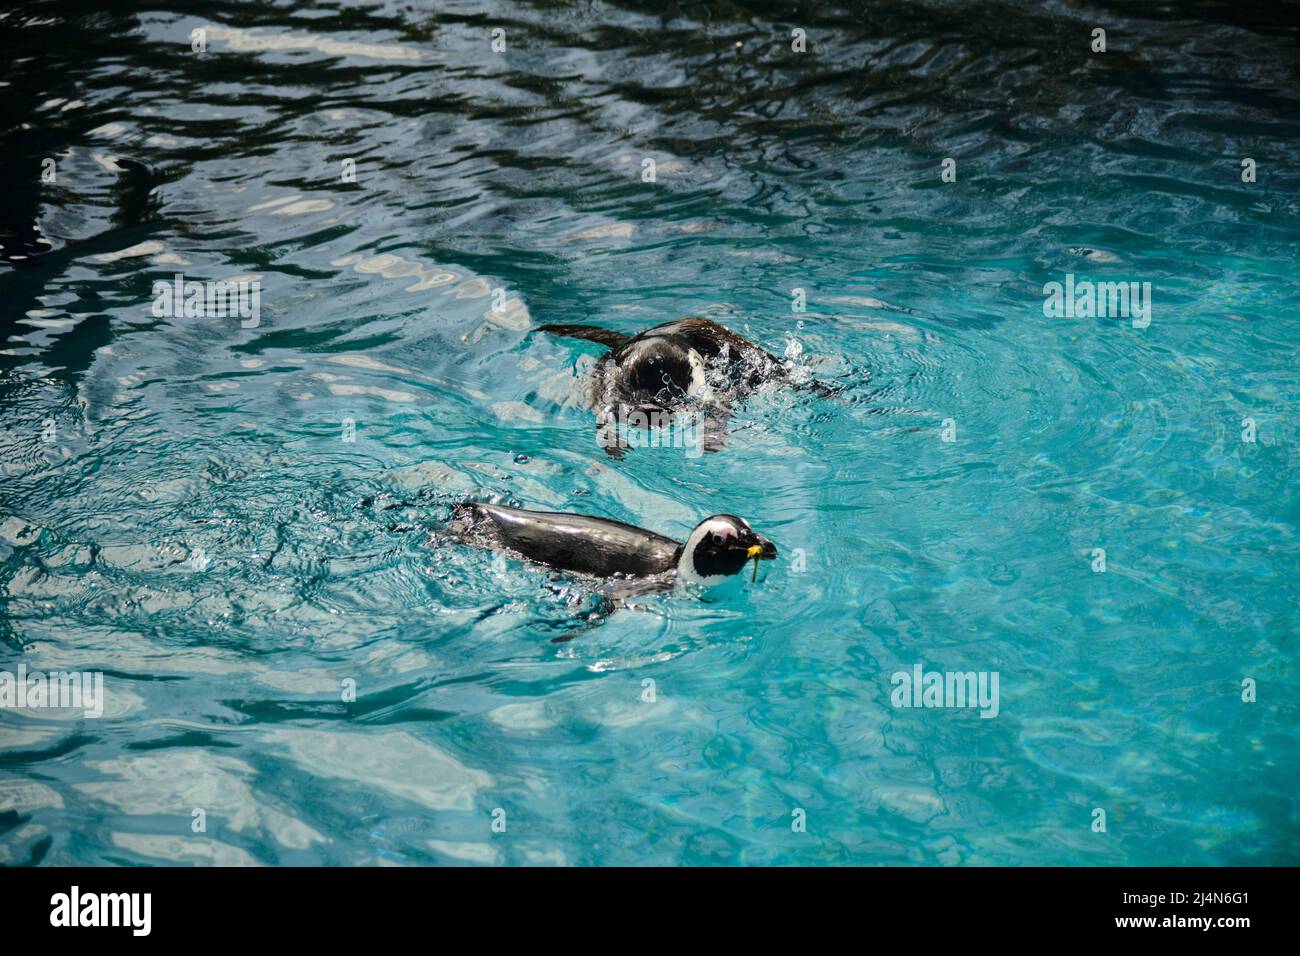 Pinguini da nuoto, acqua di colore turchese e pinguini di colore bianco e nero. Foto Stock